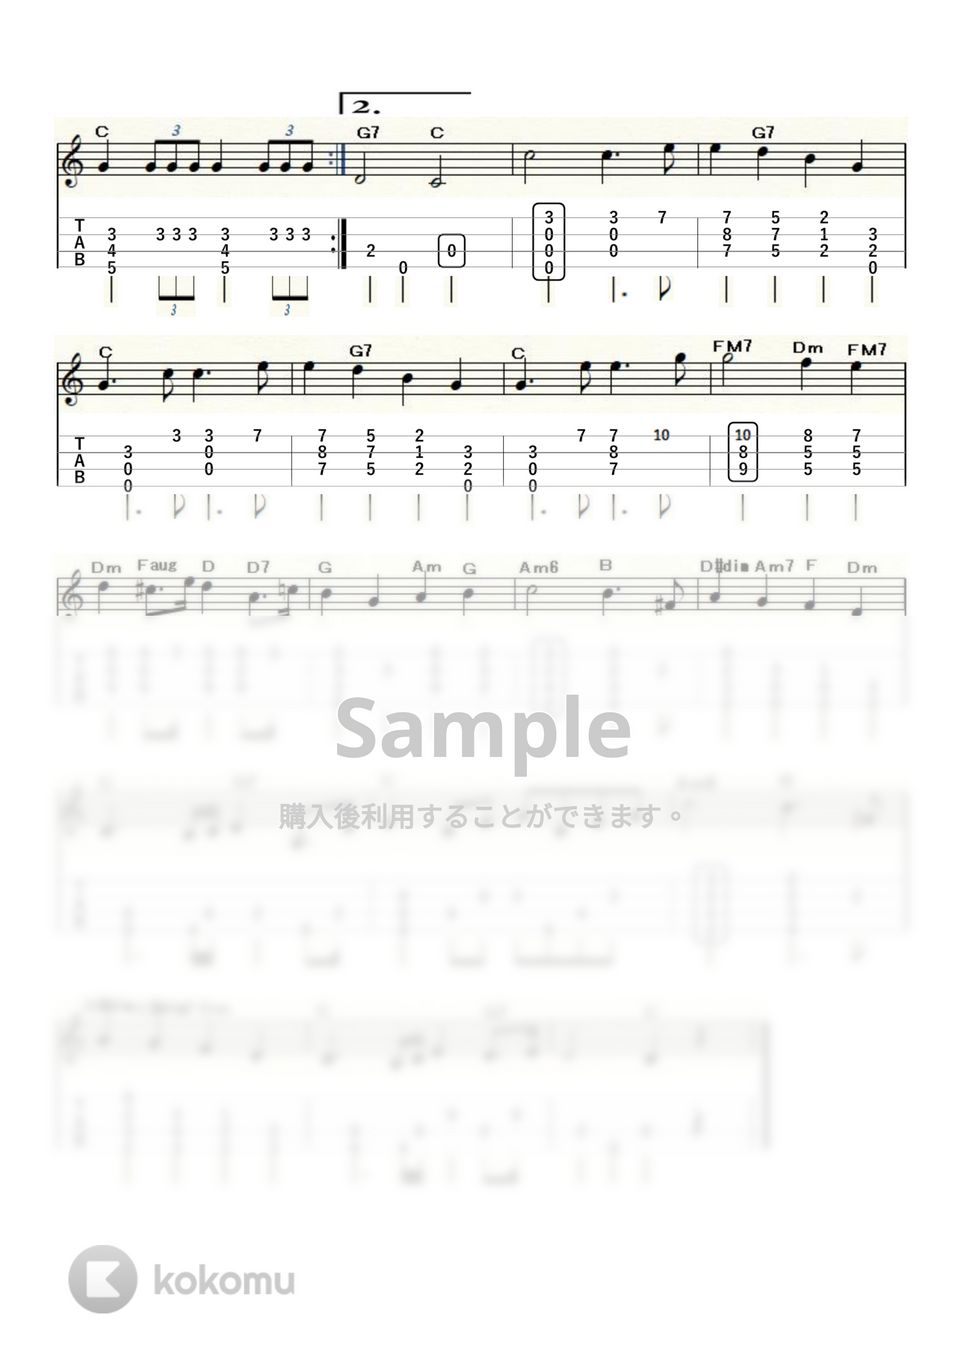 メンデルスゾーン - 結婚行進曲 (ｳｸﾚﾚｿﾛ/Low-G/中級) by ukulelepapa